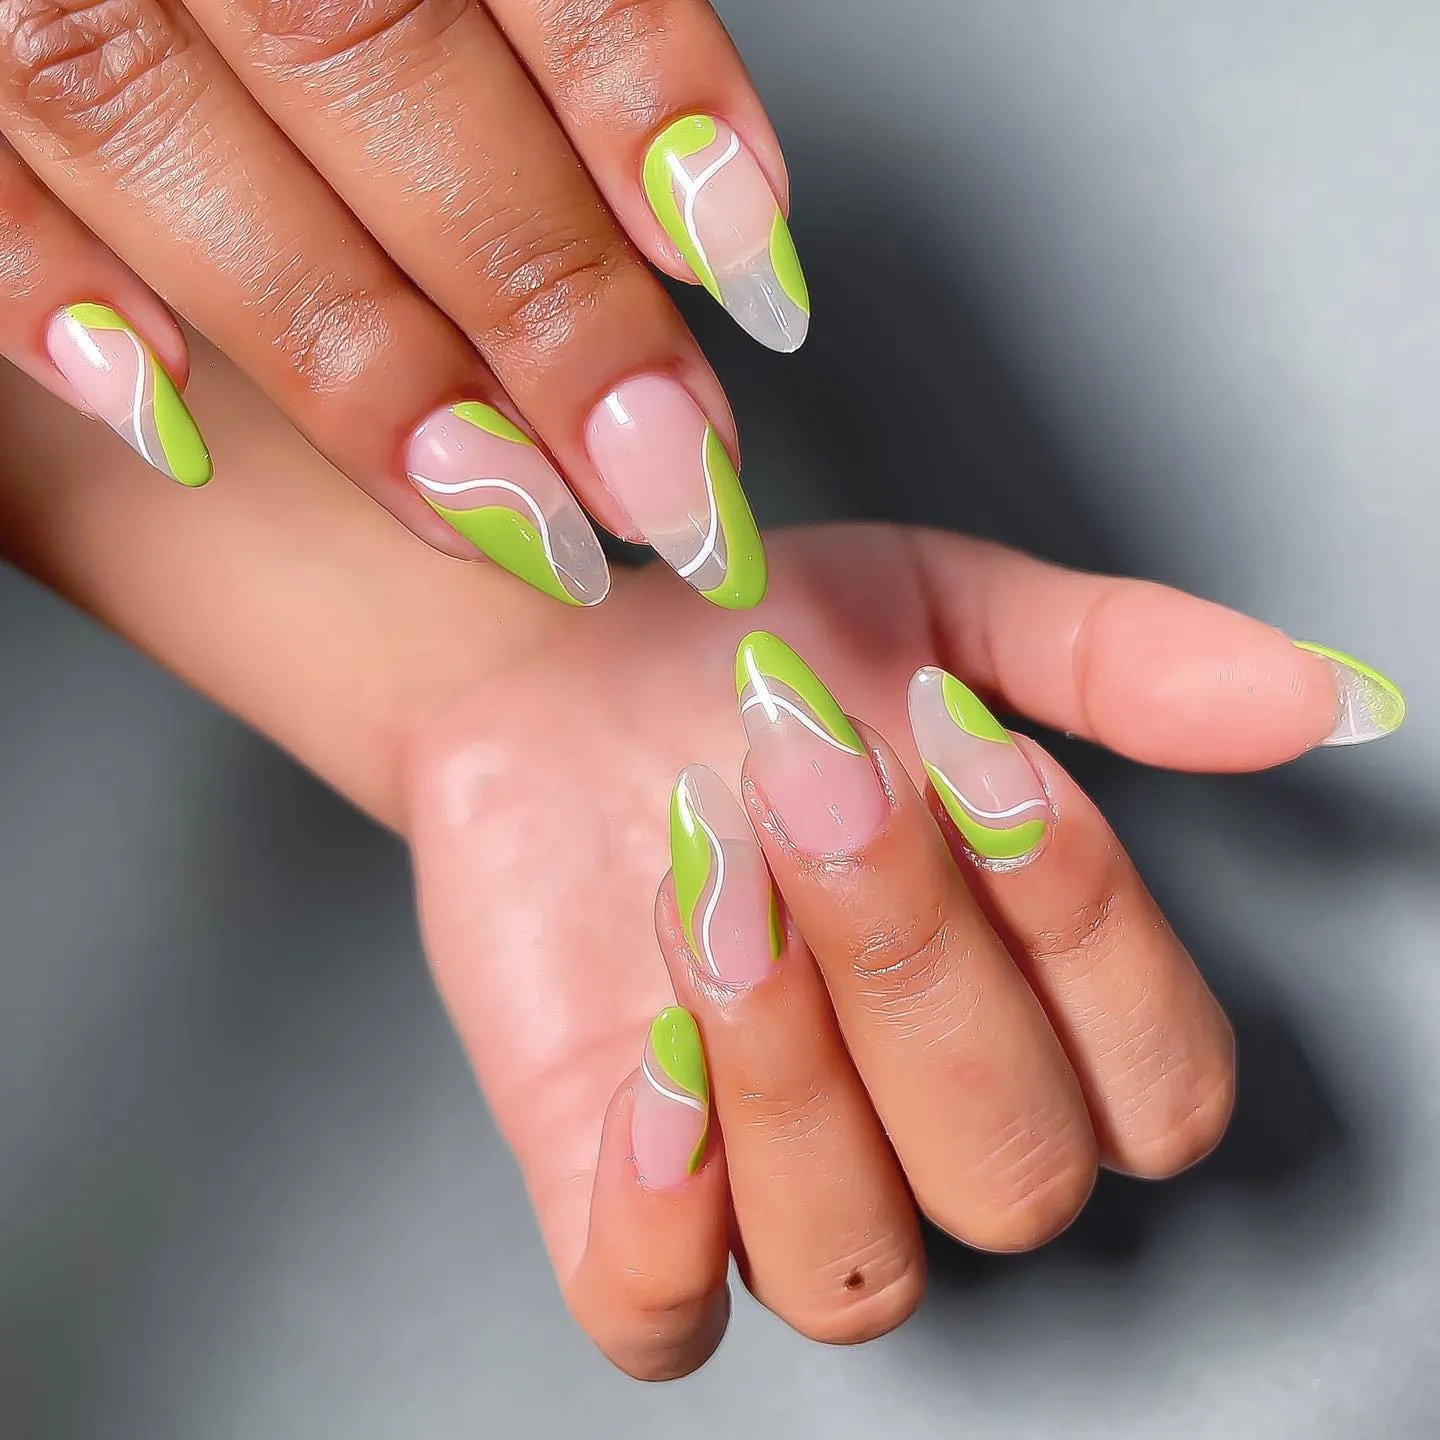 Green feels | Neon green nails, Green acrylic nails, Green nails